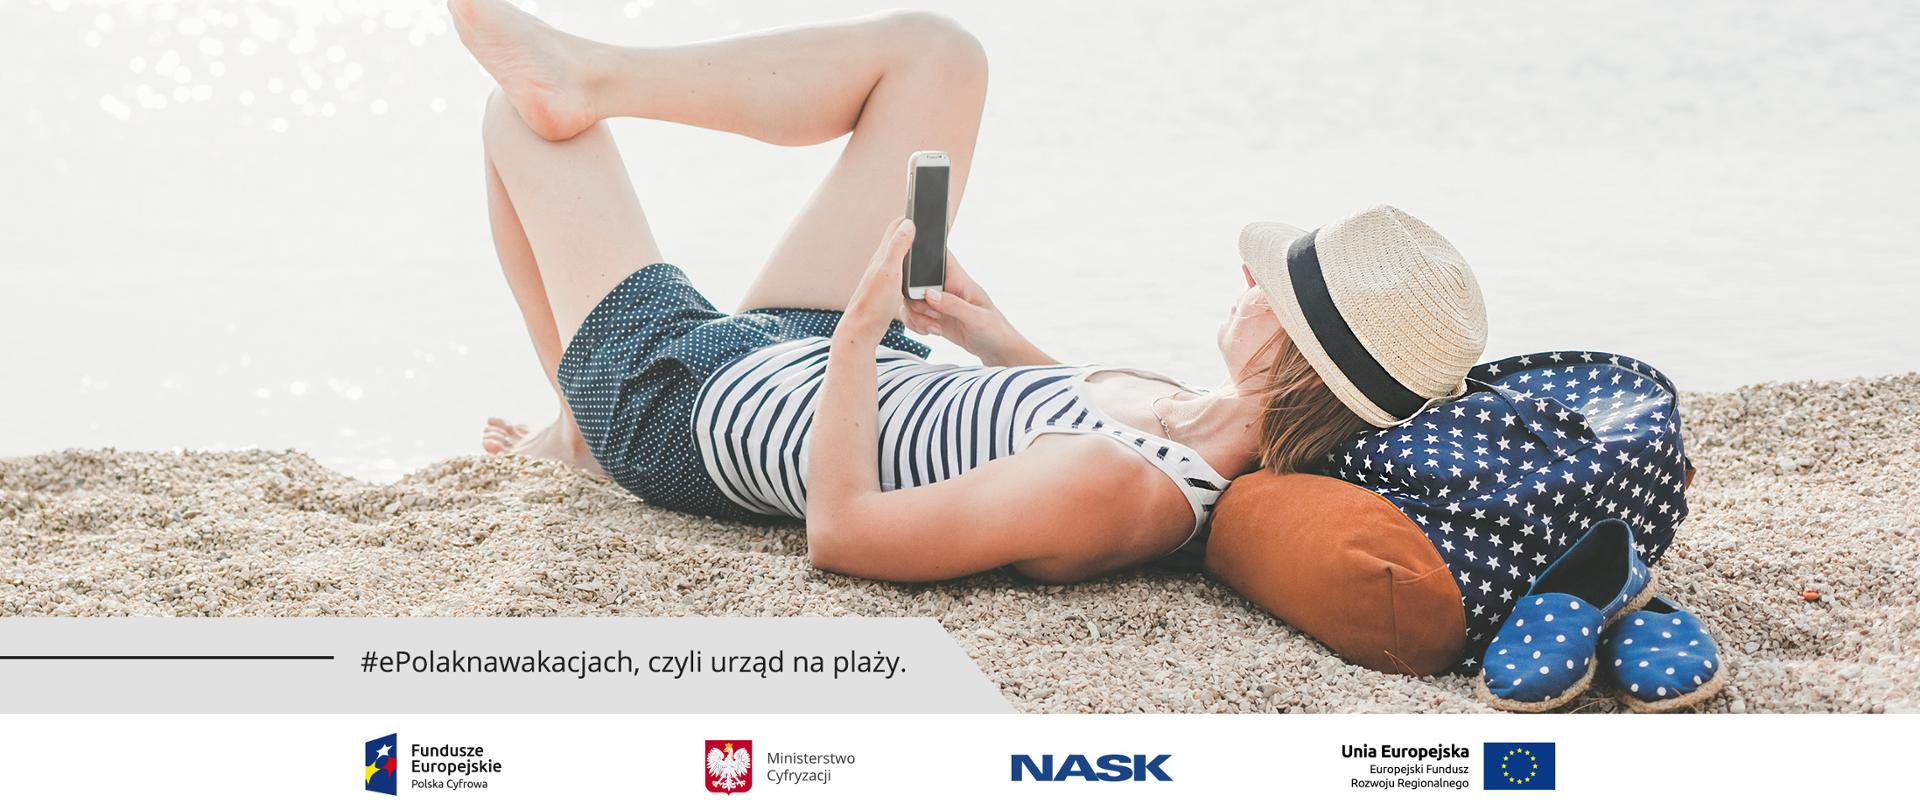 Leżąca na plaży kobieta ze smartfonem w dłoni.